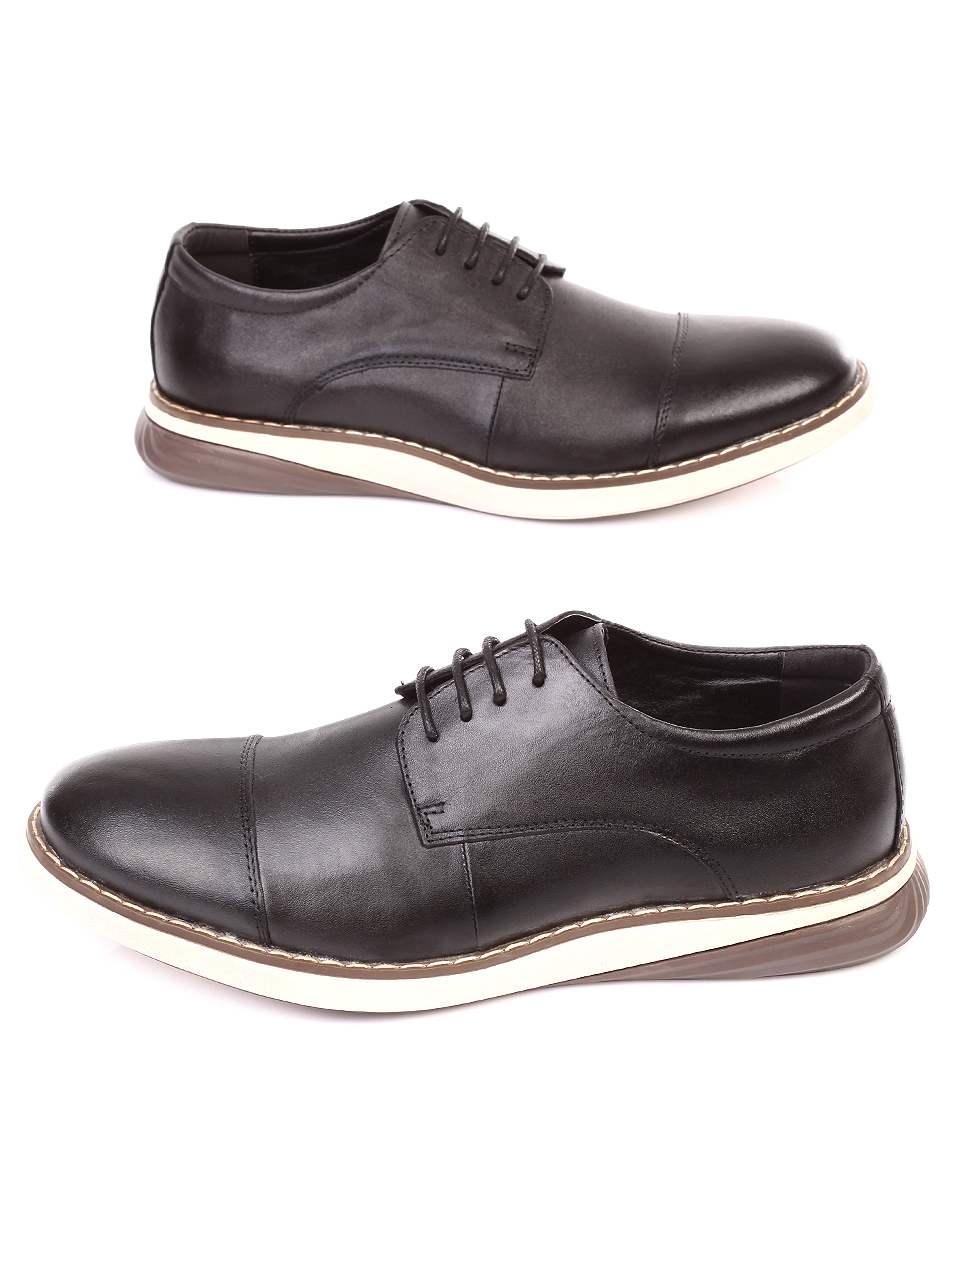 Ежедневни мъжки обувки от естествена кожа 7N-18749 black